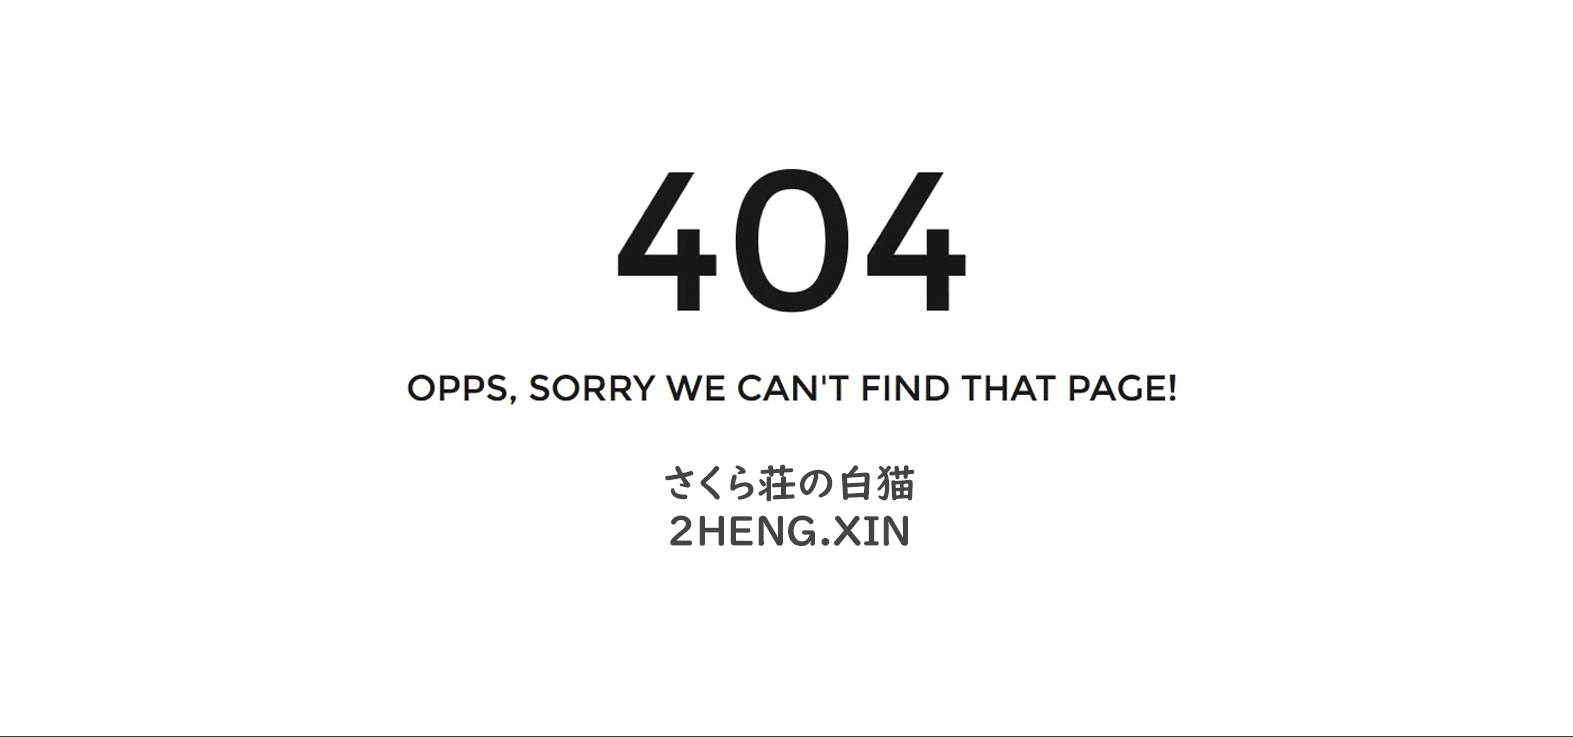 Https 404 error. Ошибка 404. Ошибка 404 картинка. Надпись 404. Ошибка еррор 404.